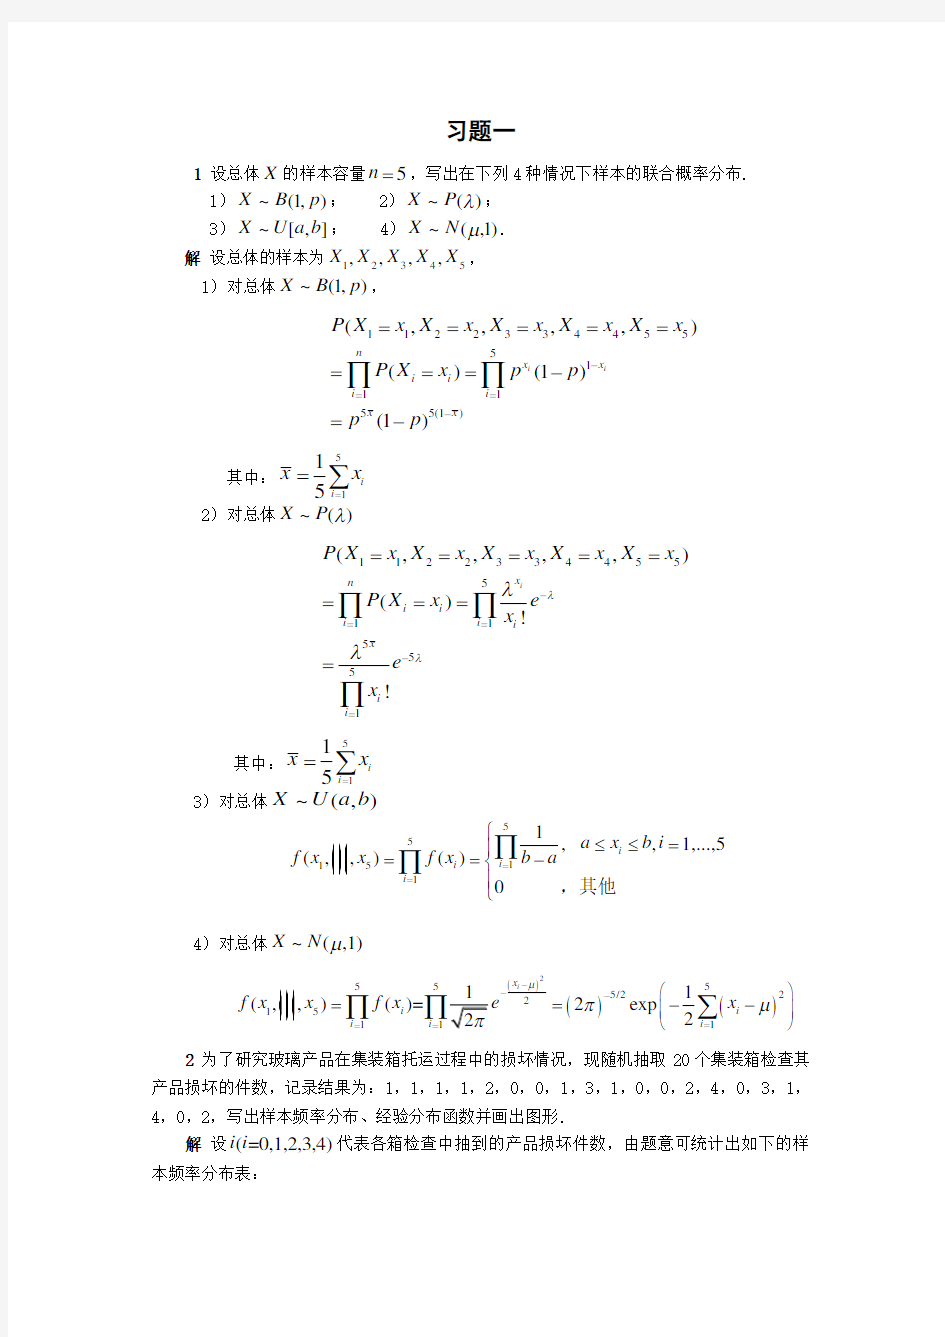 清华大学 杨虎 应用数理统计课后习题参考答案